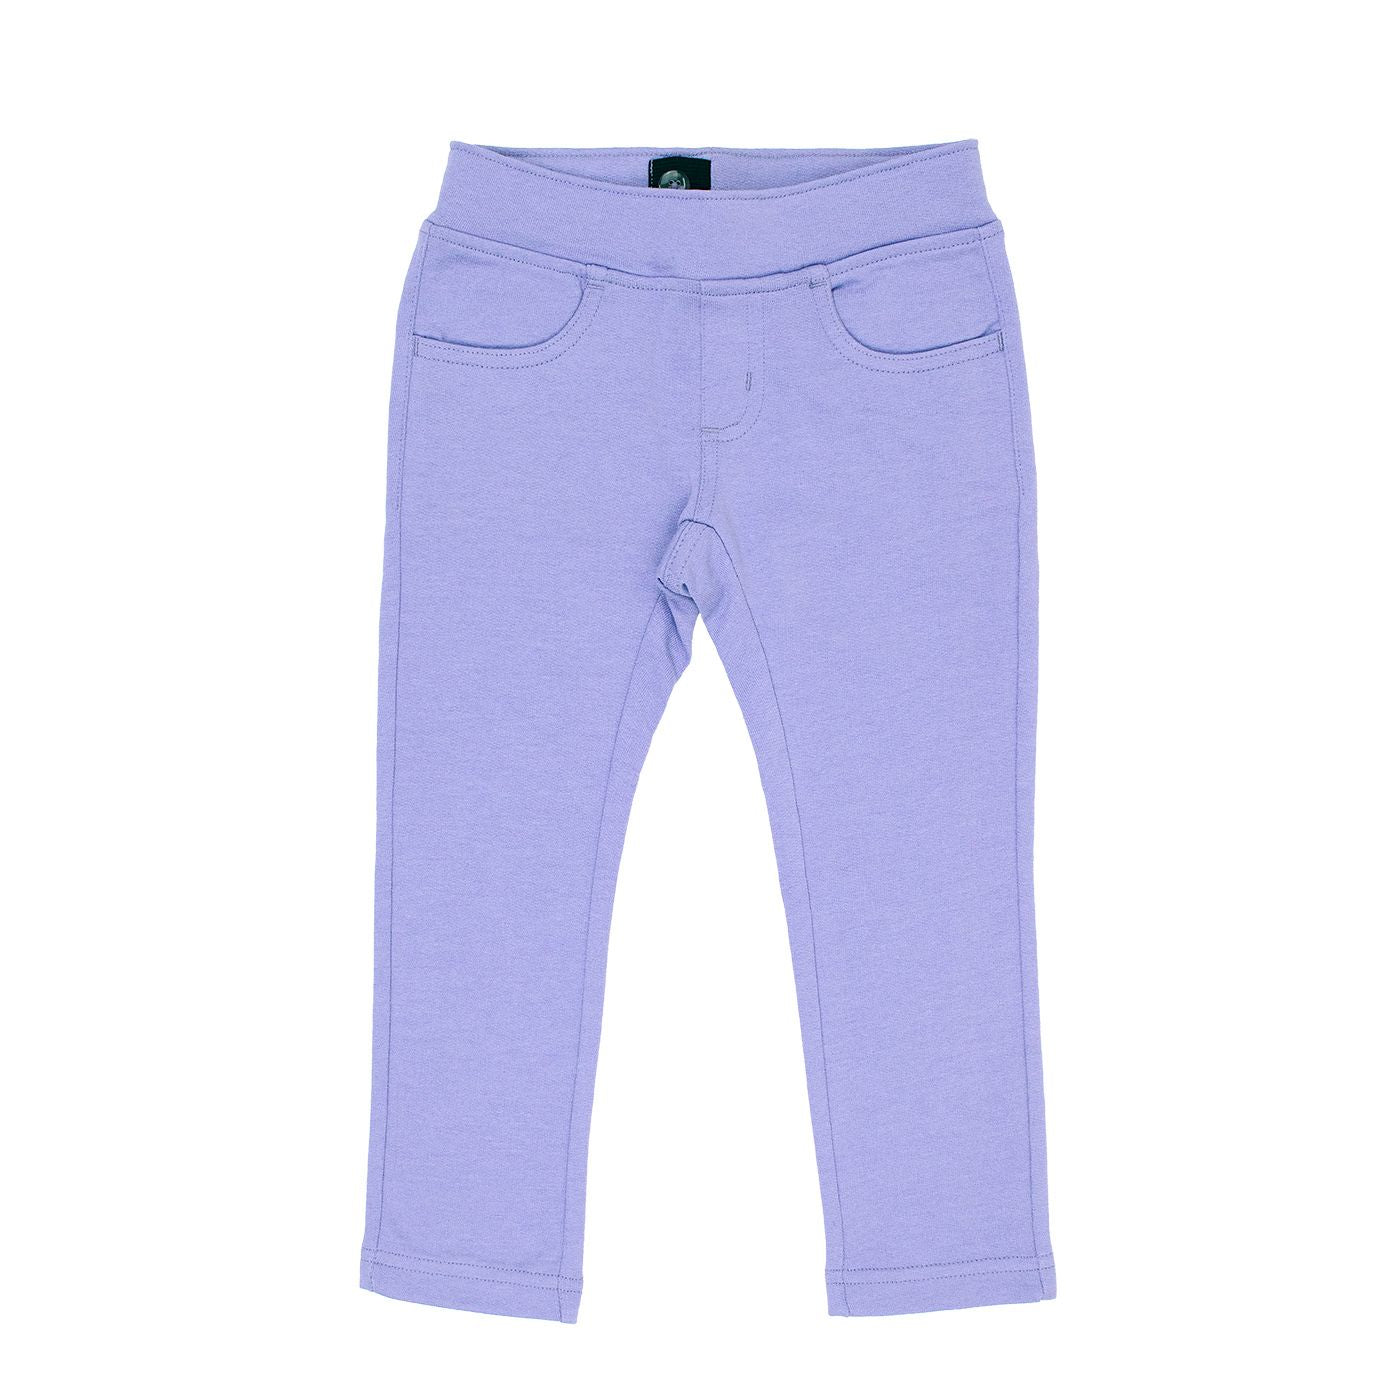 College Wear "Jeans" in Lavender-Villervalla-Modern Rascals